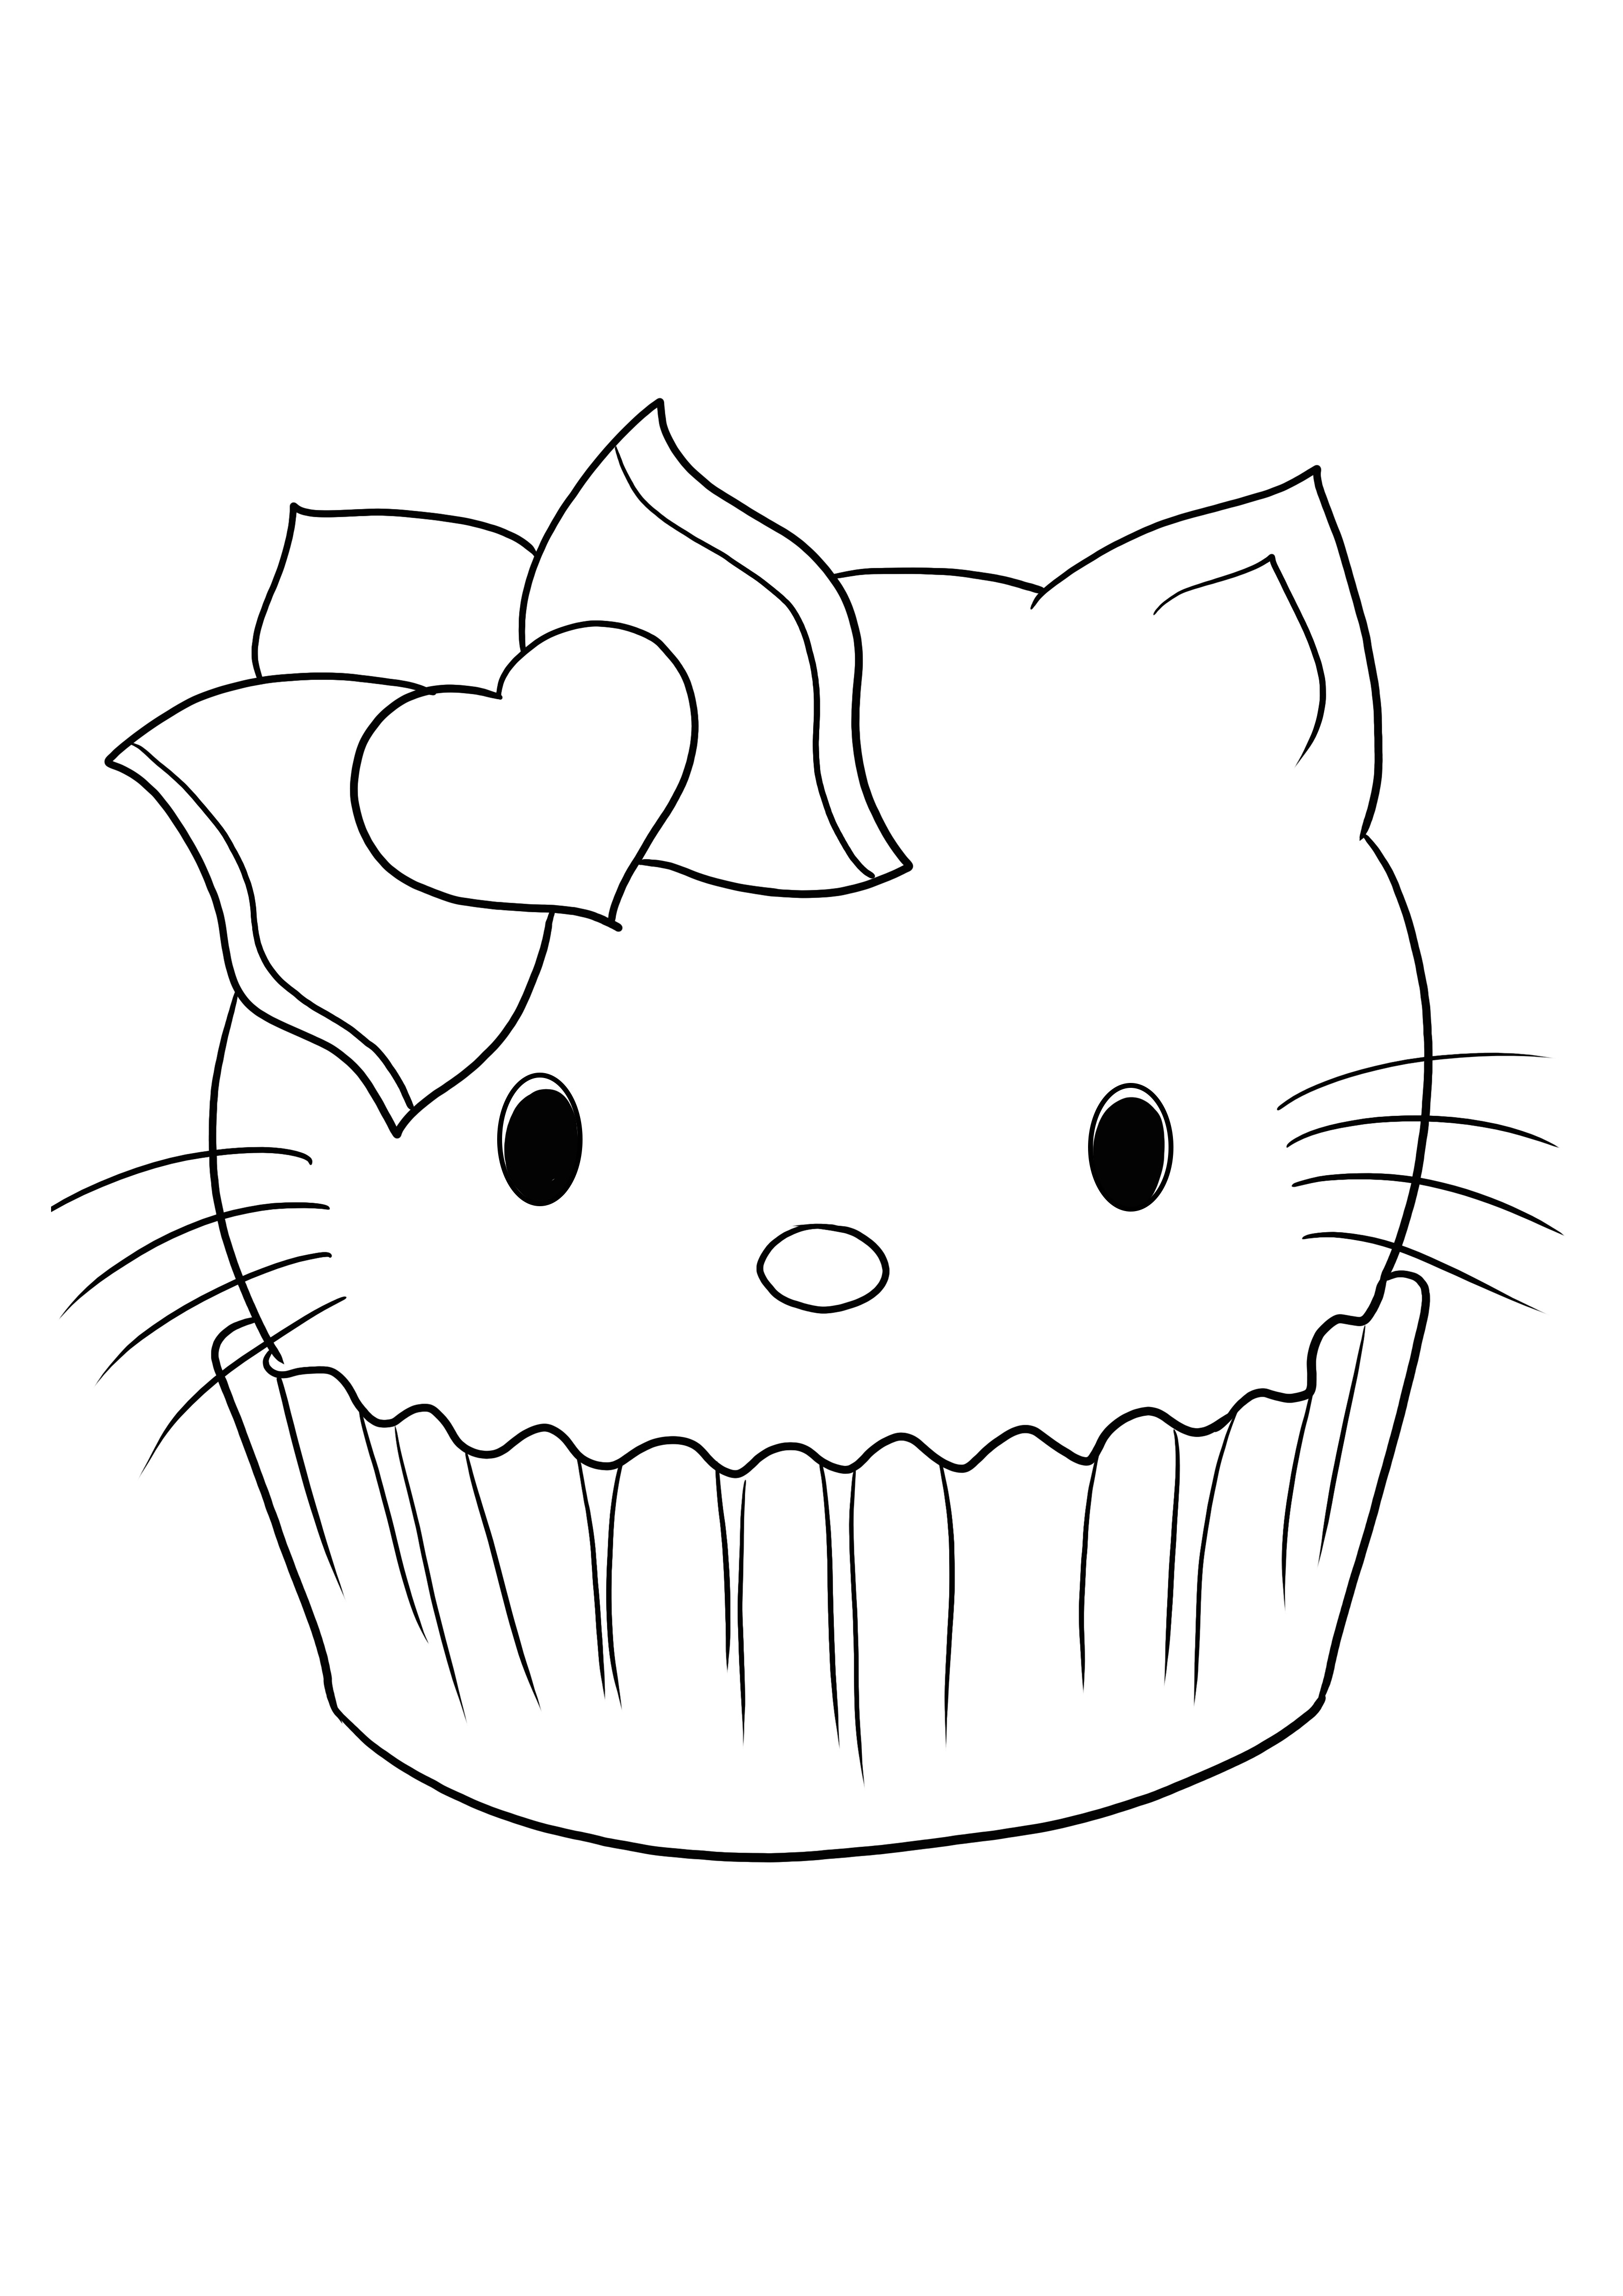 Hello Kitty in a Cupcake'te çocuklar için indirmesi veya yazdırması ve boyaması kolay